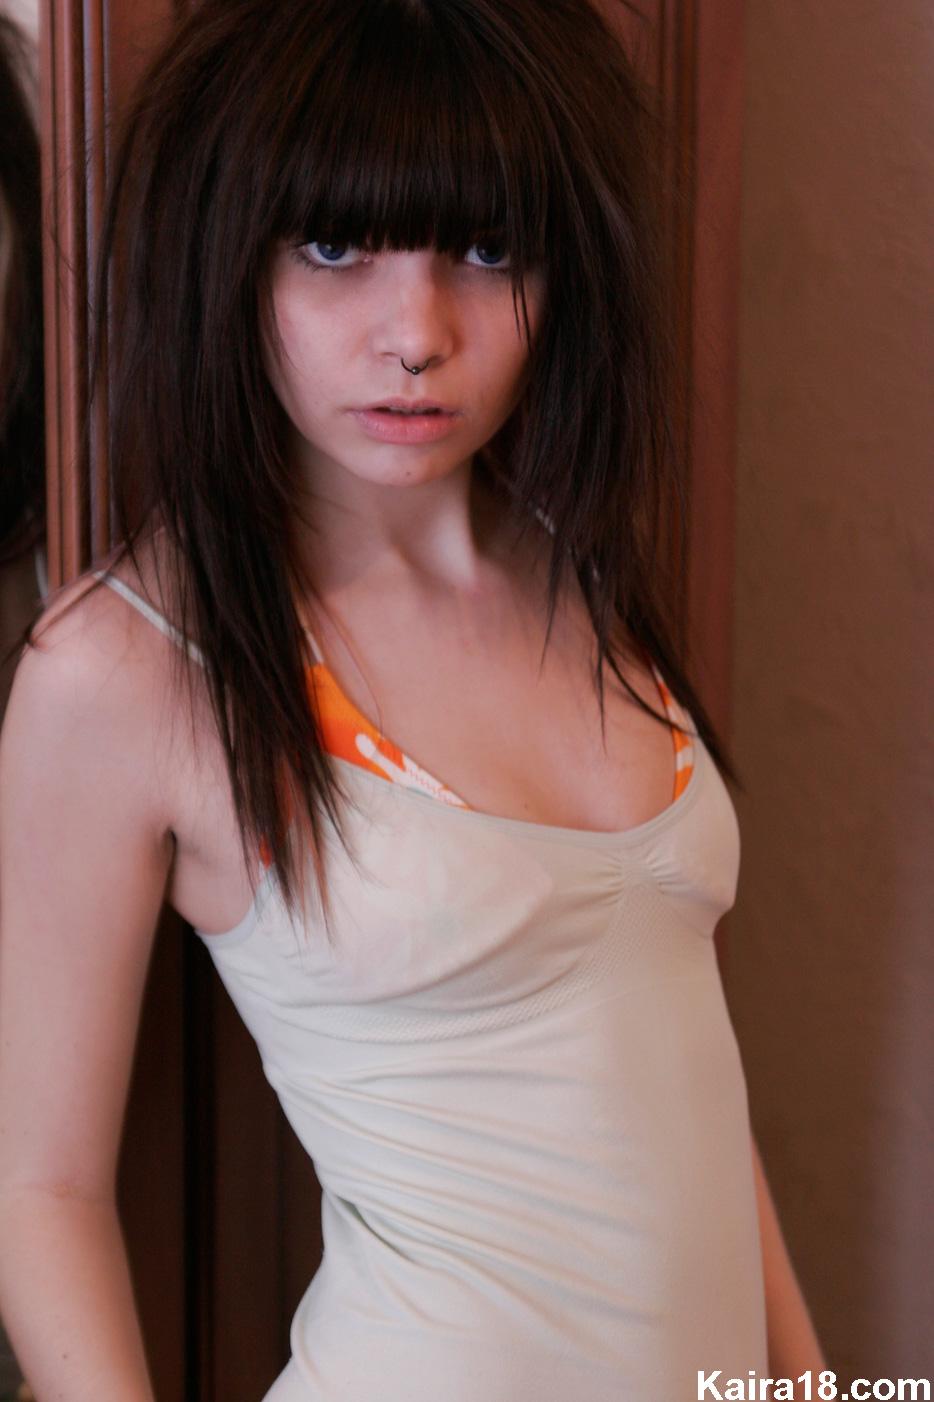 Bilder von Teenager-Mädchen kaira 18 wartet auf Sie im Bett
 #55901006